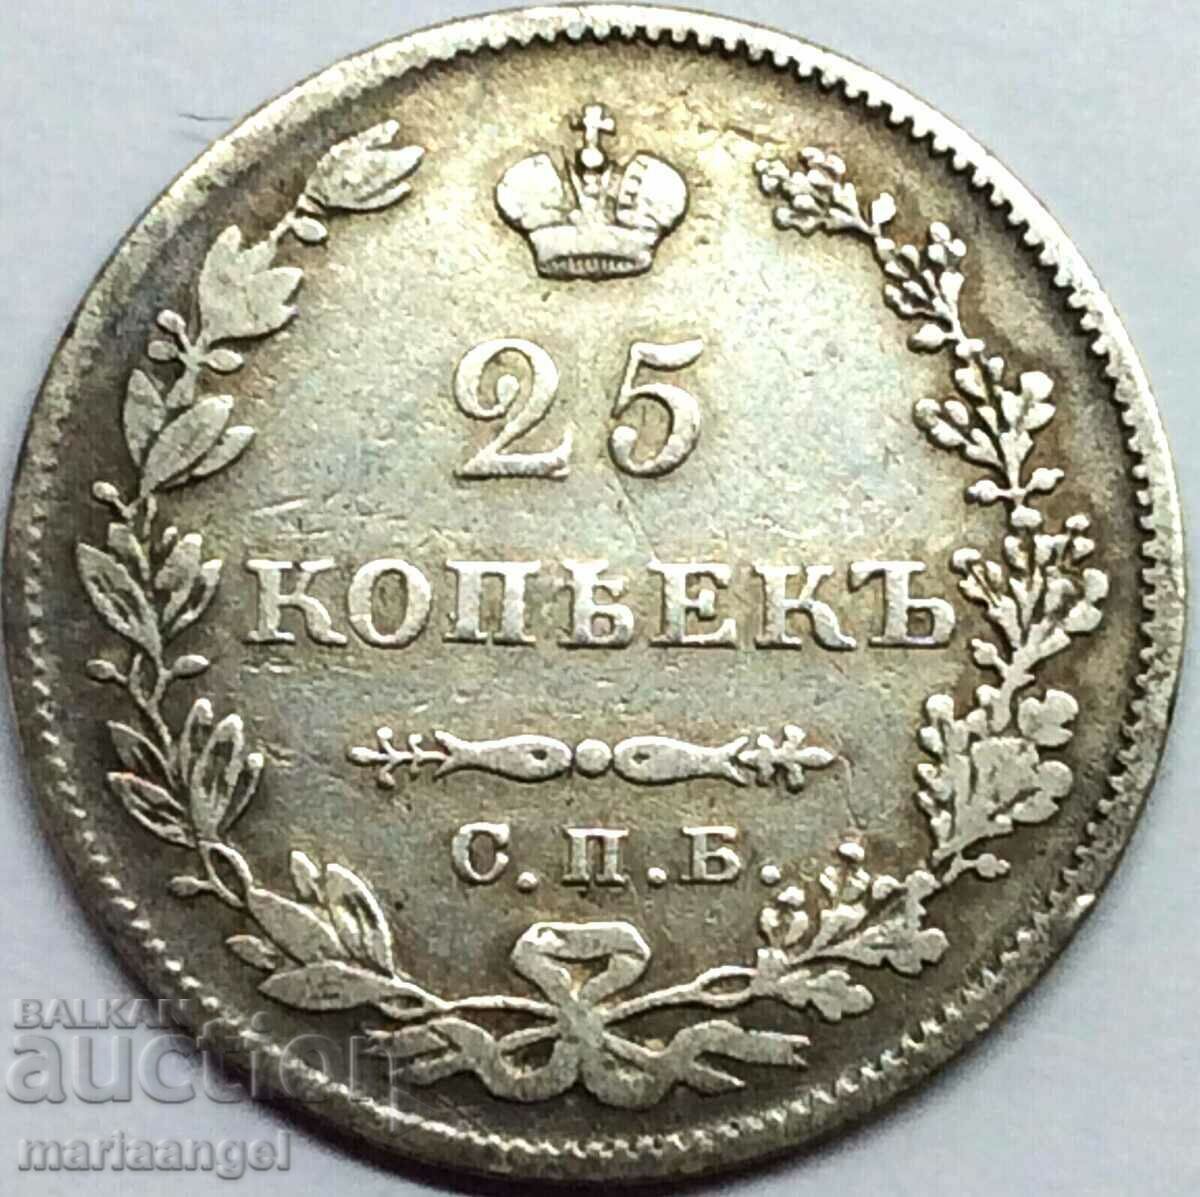 25 kopecks 1827 Russia silver - quite rare